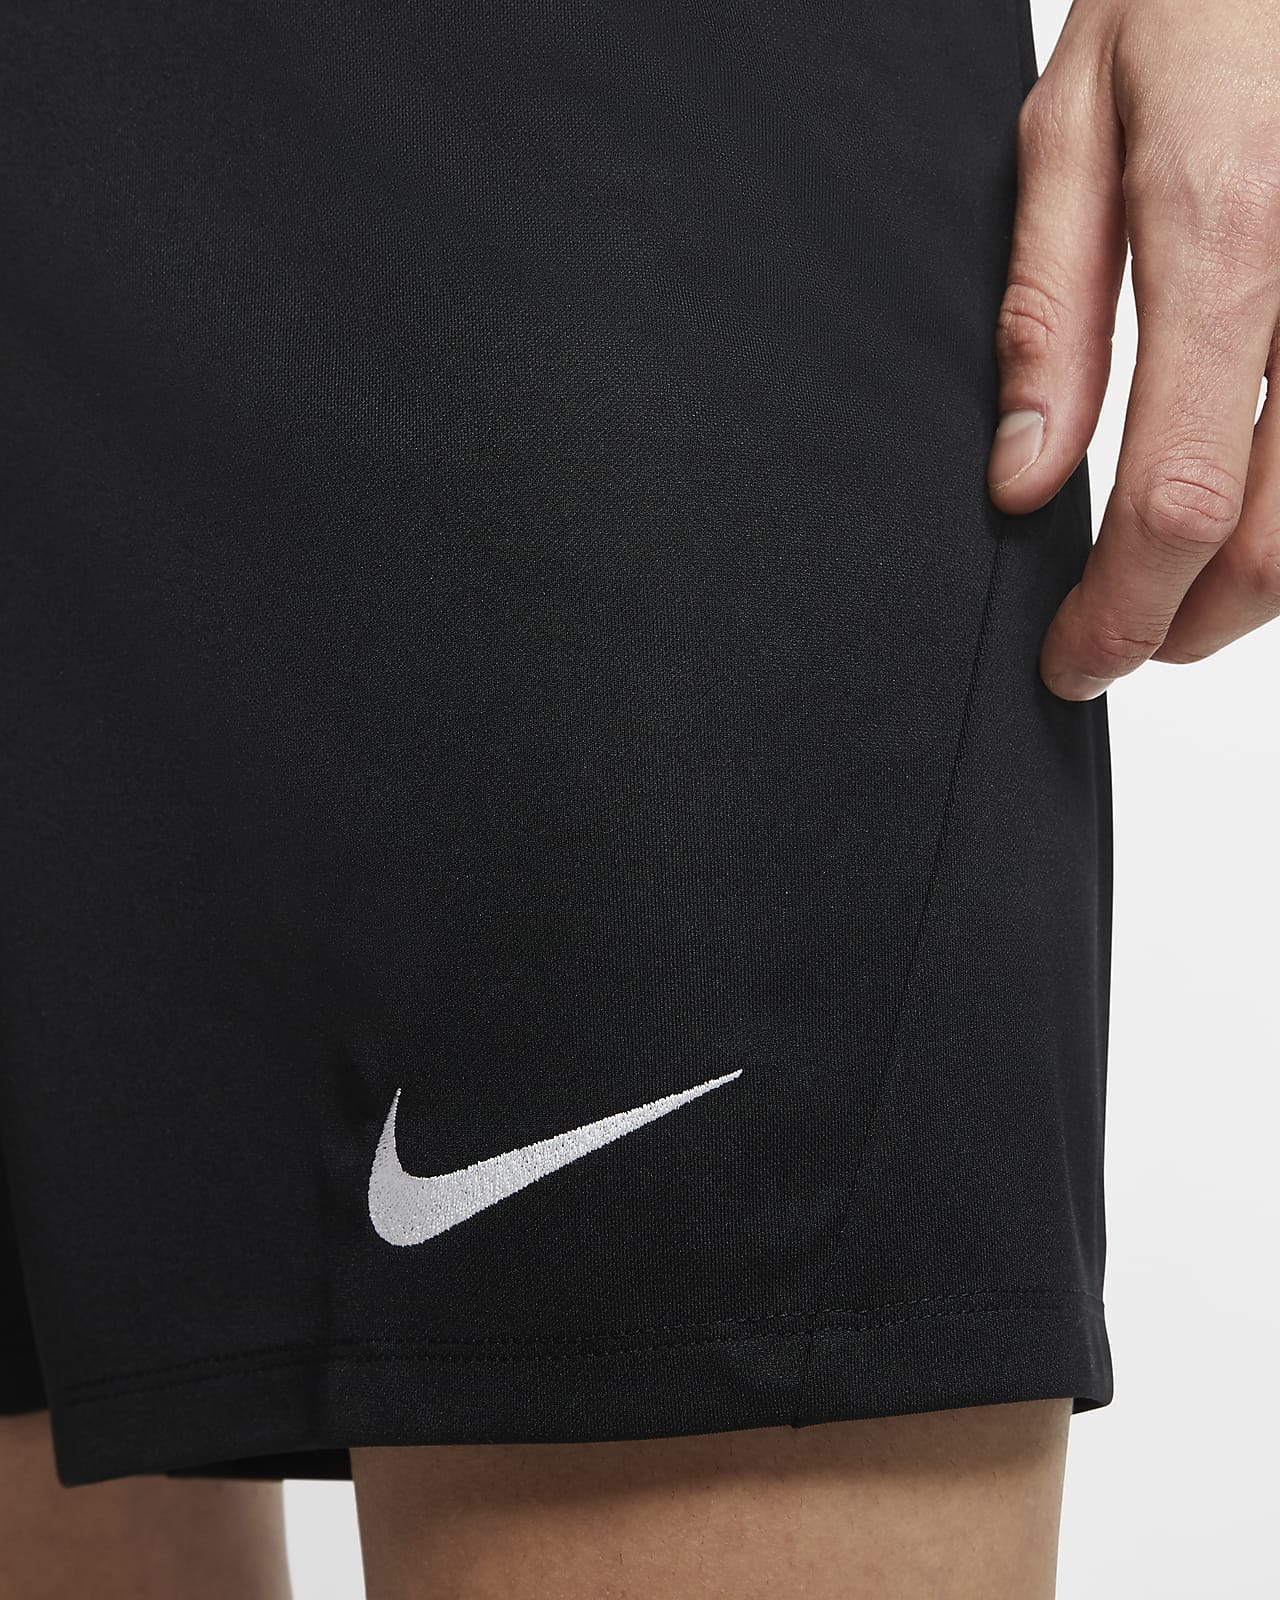 Nike公式 ナイキ Dri Fit パーク 3 メンズ ニット サッカーショートパンツ オンラインストア 通販サイト